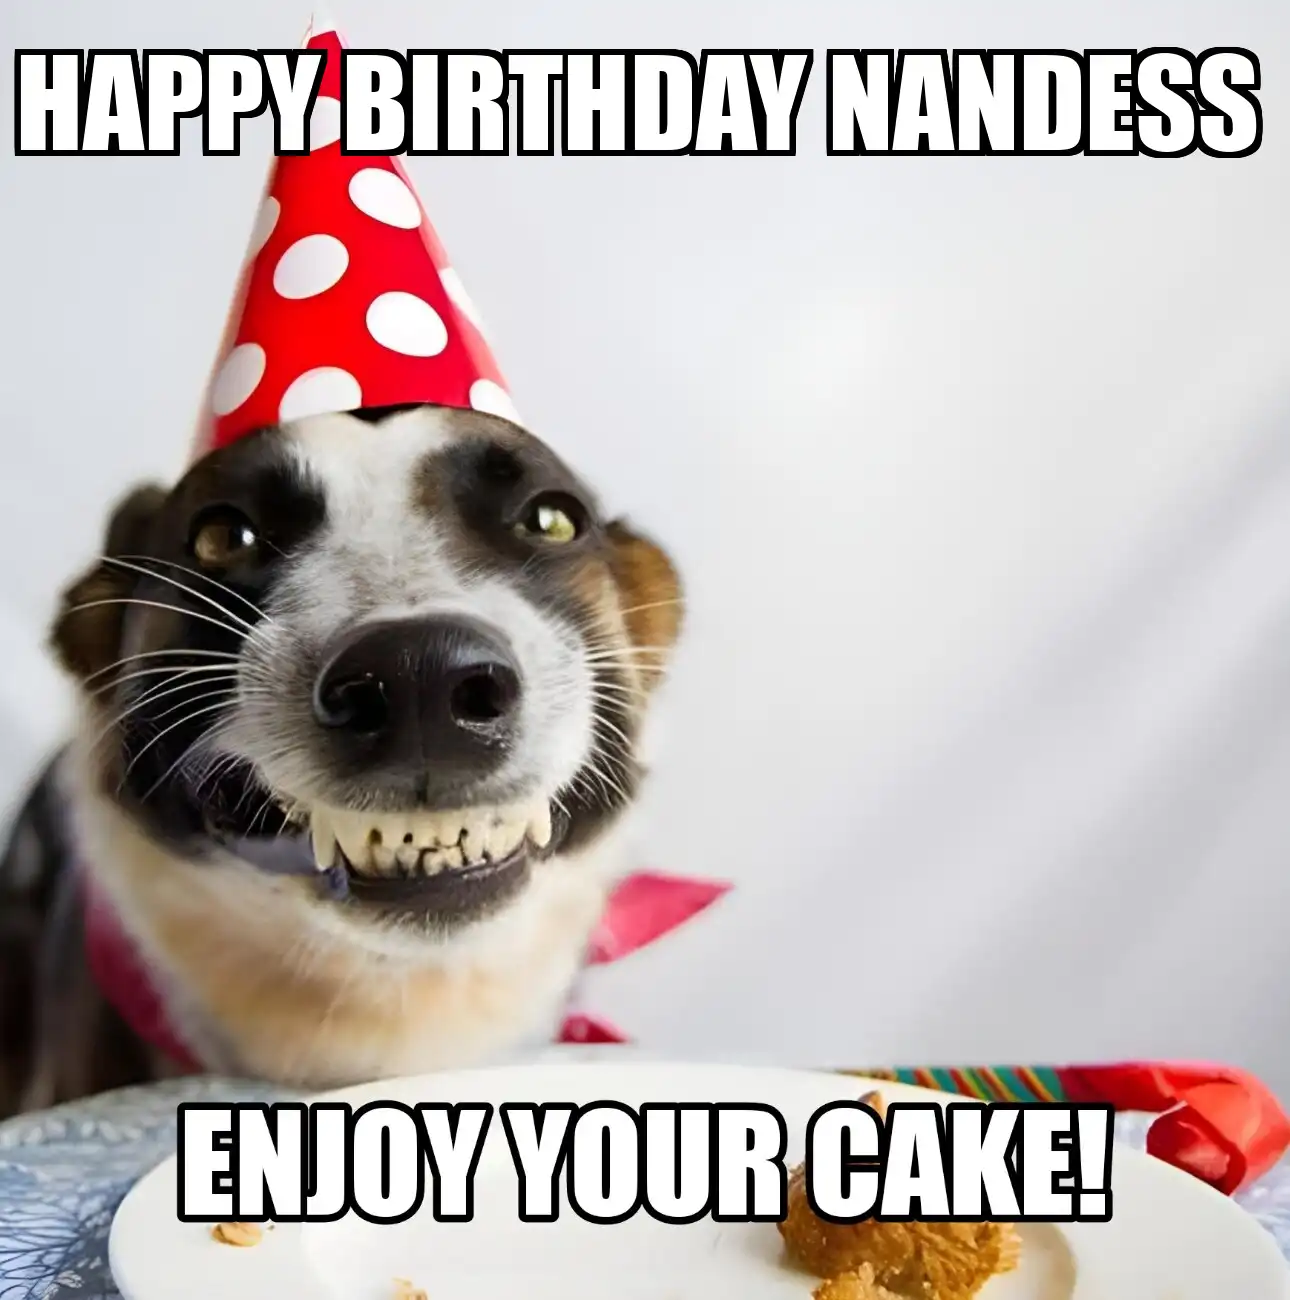 Happy Birthday Nandess Enjoy Your Cake Dog Meme